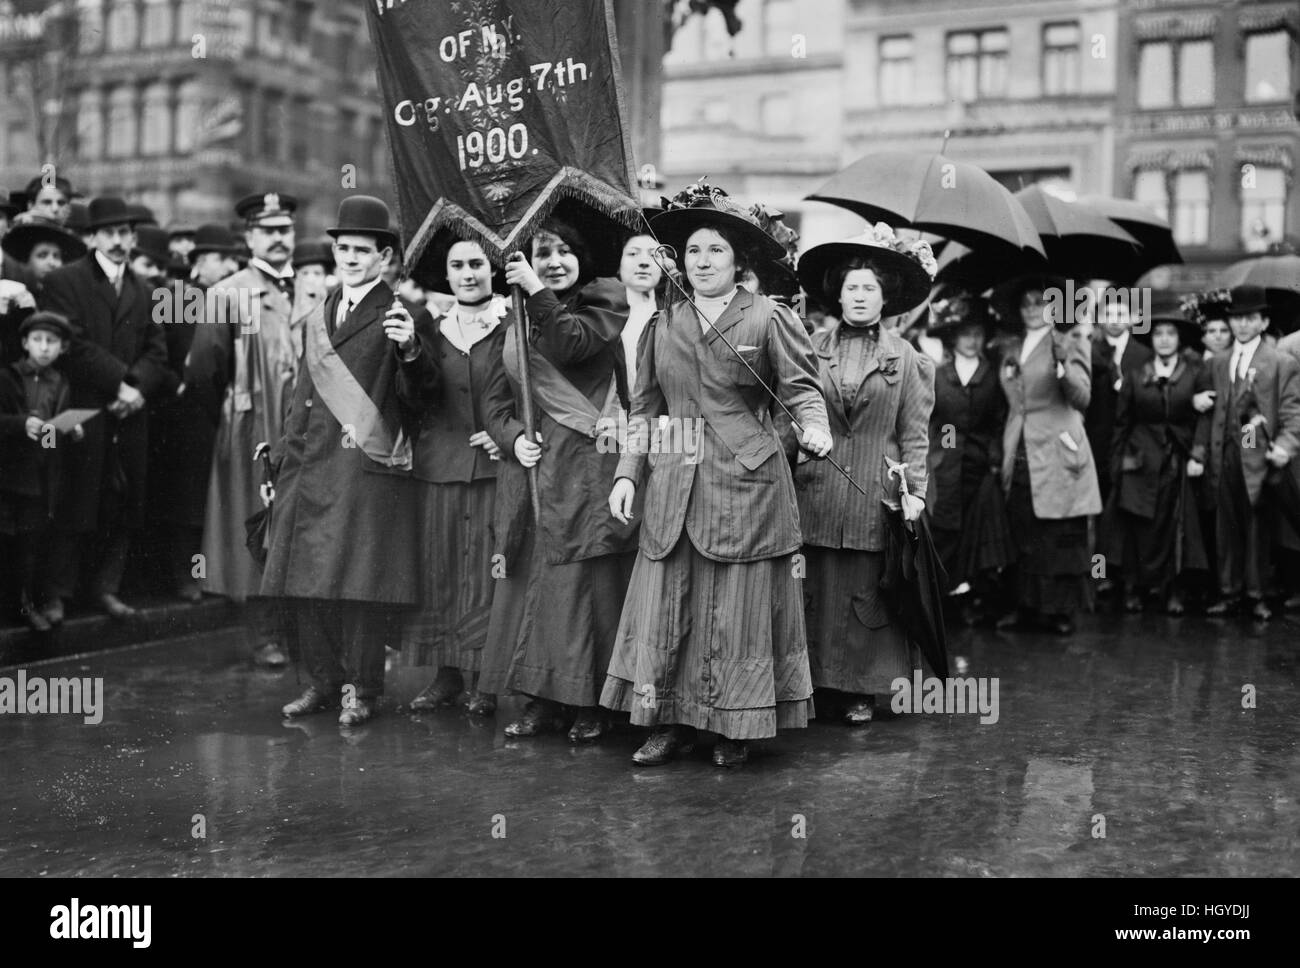 Donne dimostranti, giorno di maggio Parade, la città di New York, New York, Stati Uniti d'America, Bain News Service, 1 maggio 1909 Foto Stock